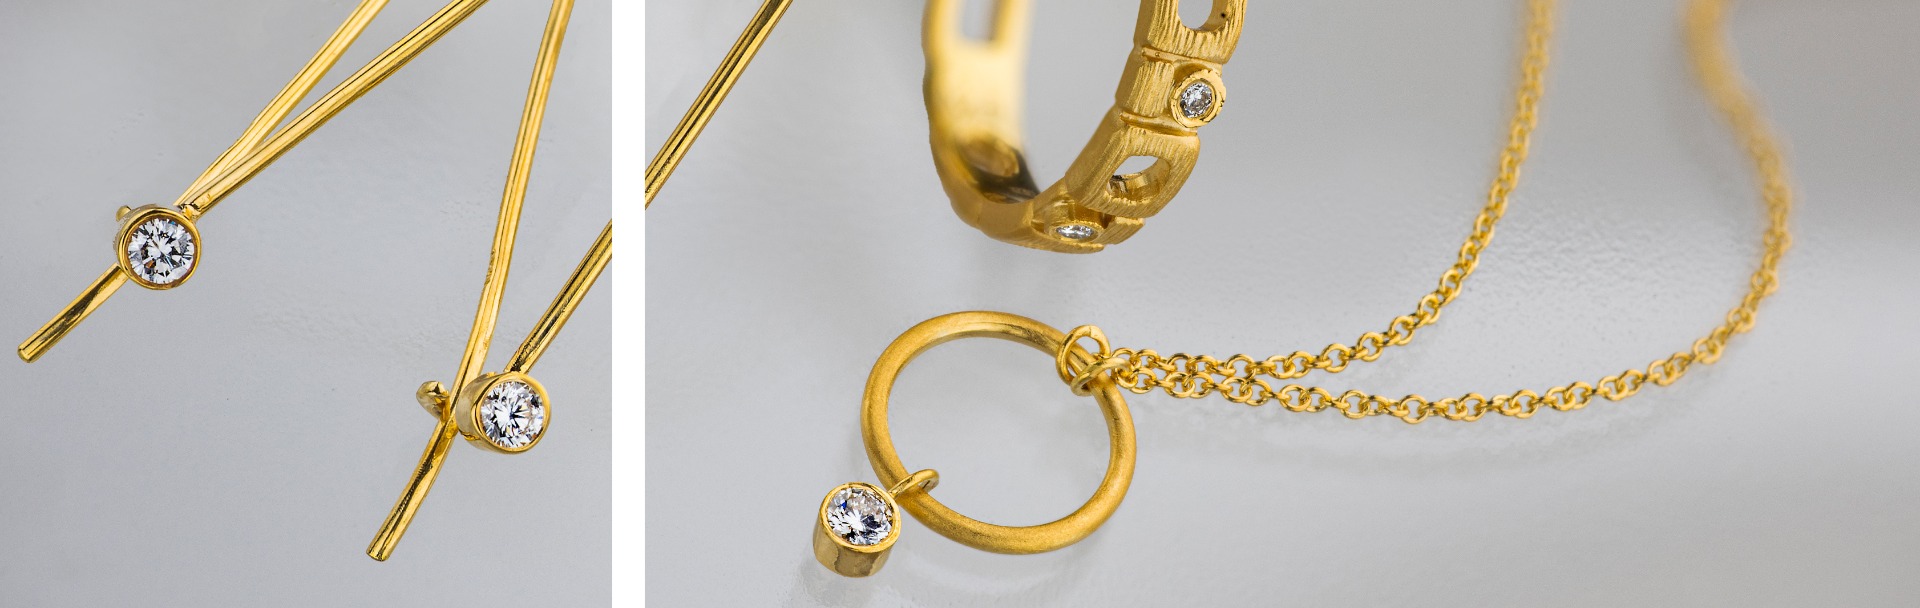 14k gold jewelry set with Diamonds